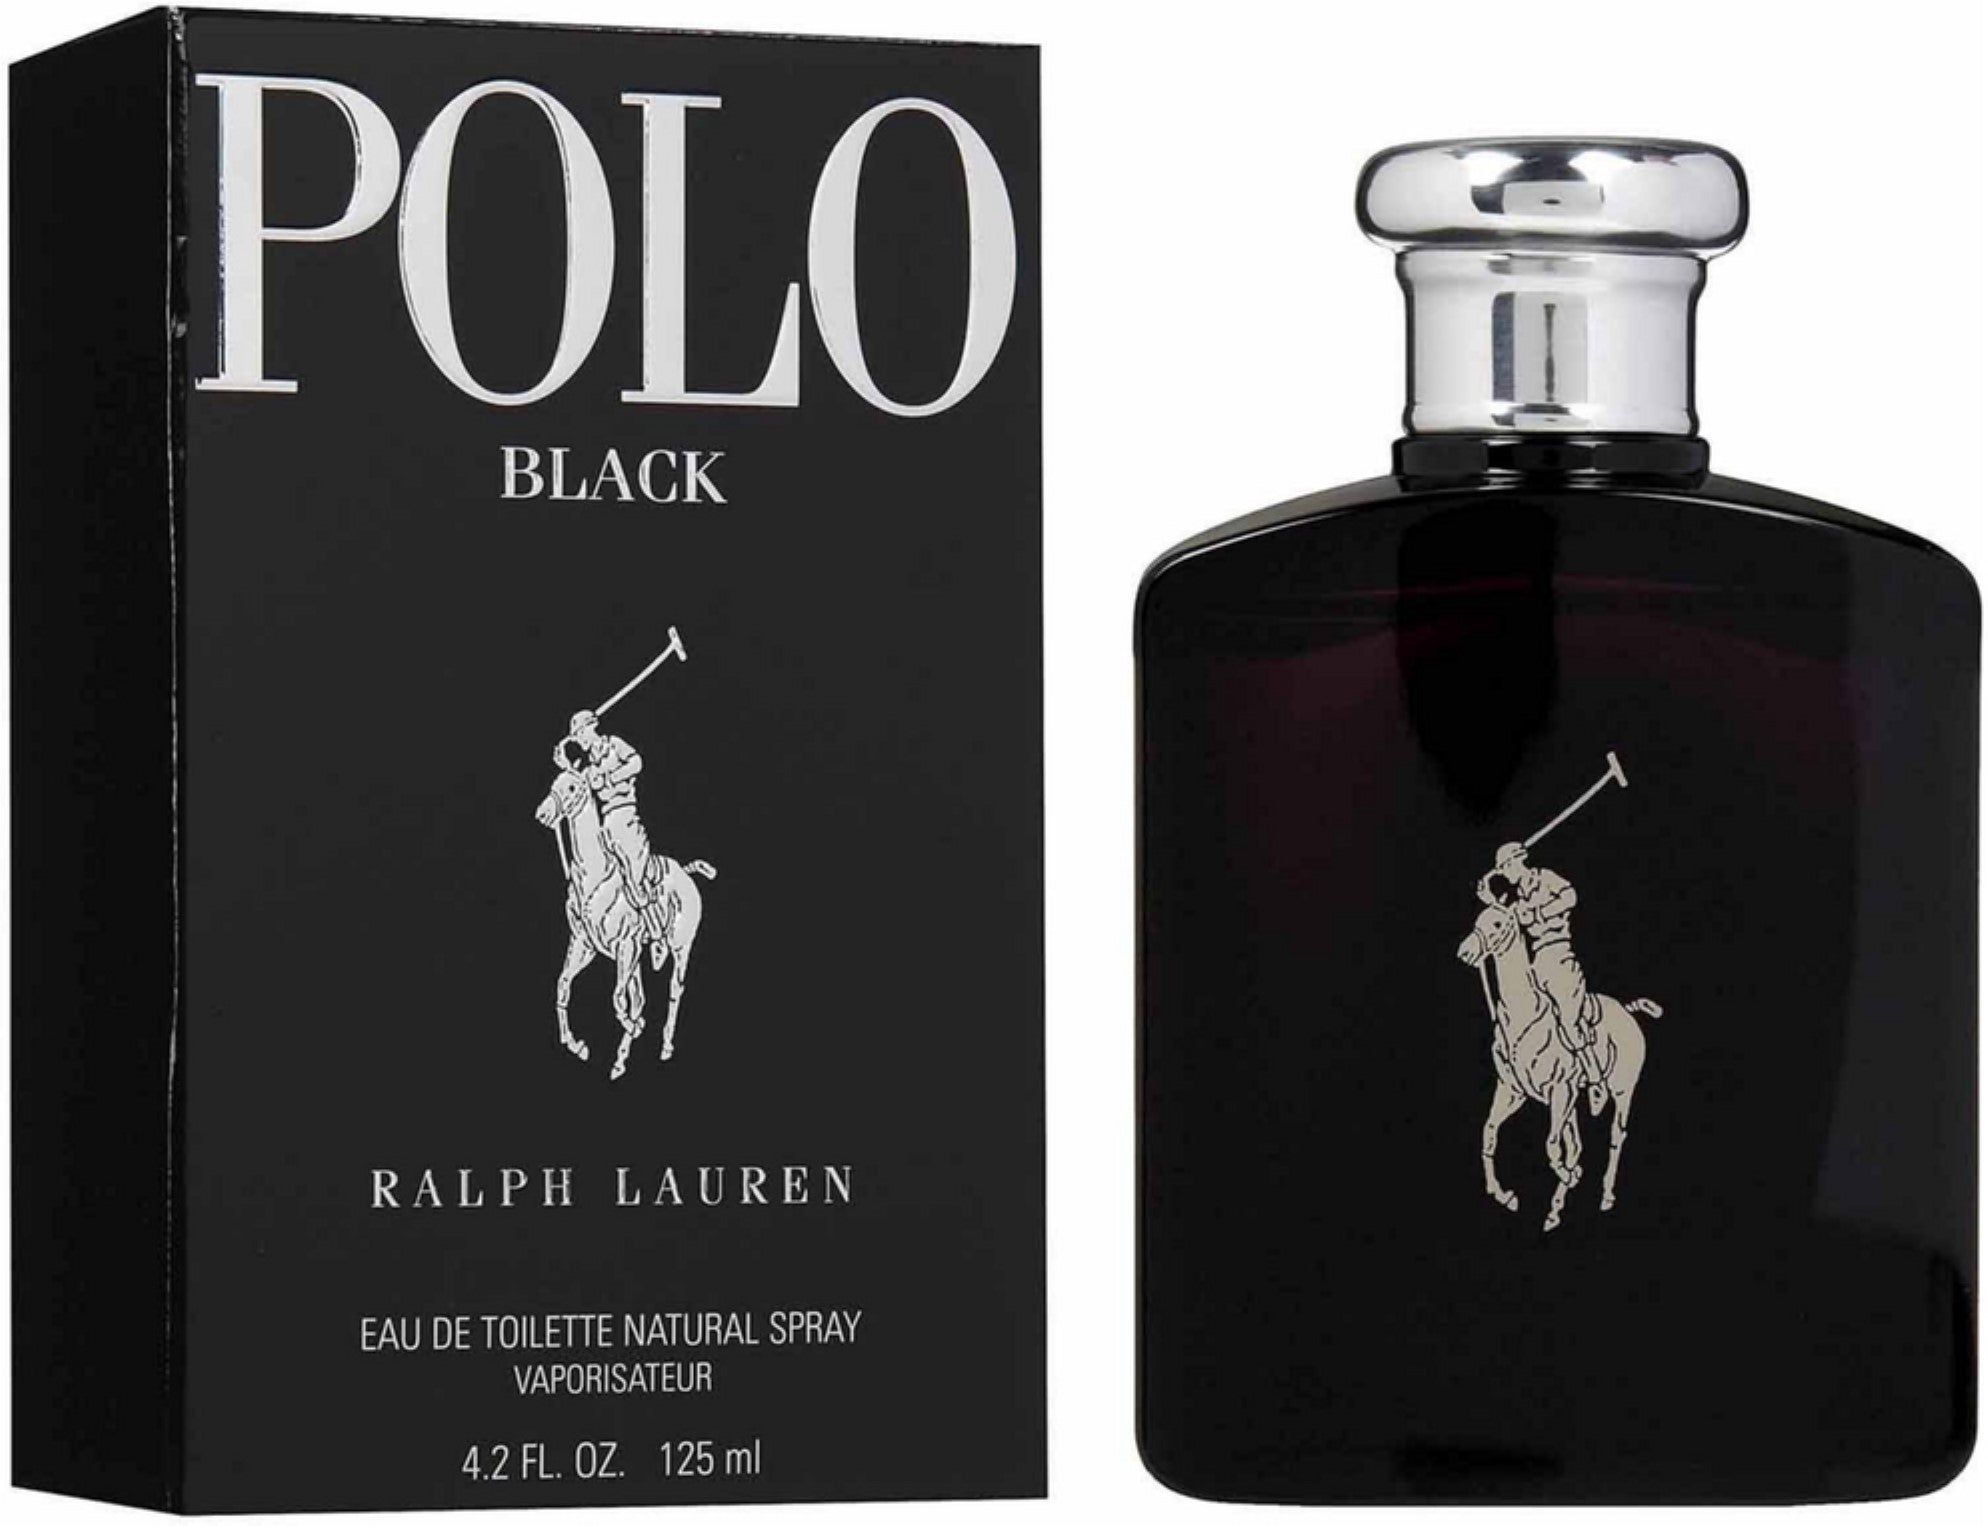  Polo by Ralph Lauren for Men, Eau de Toilette Natural